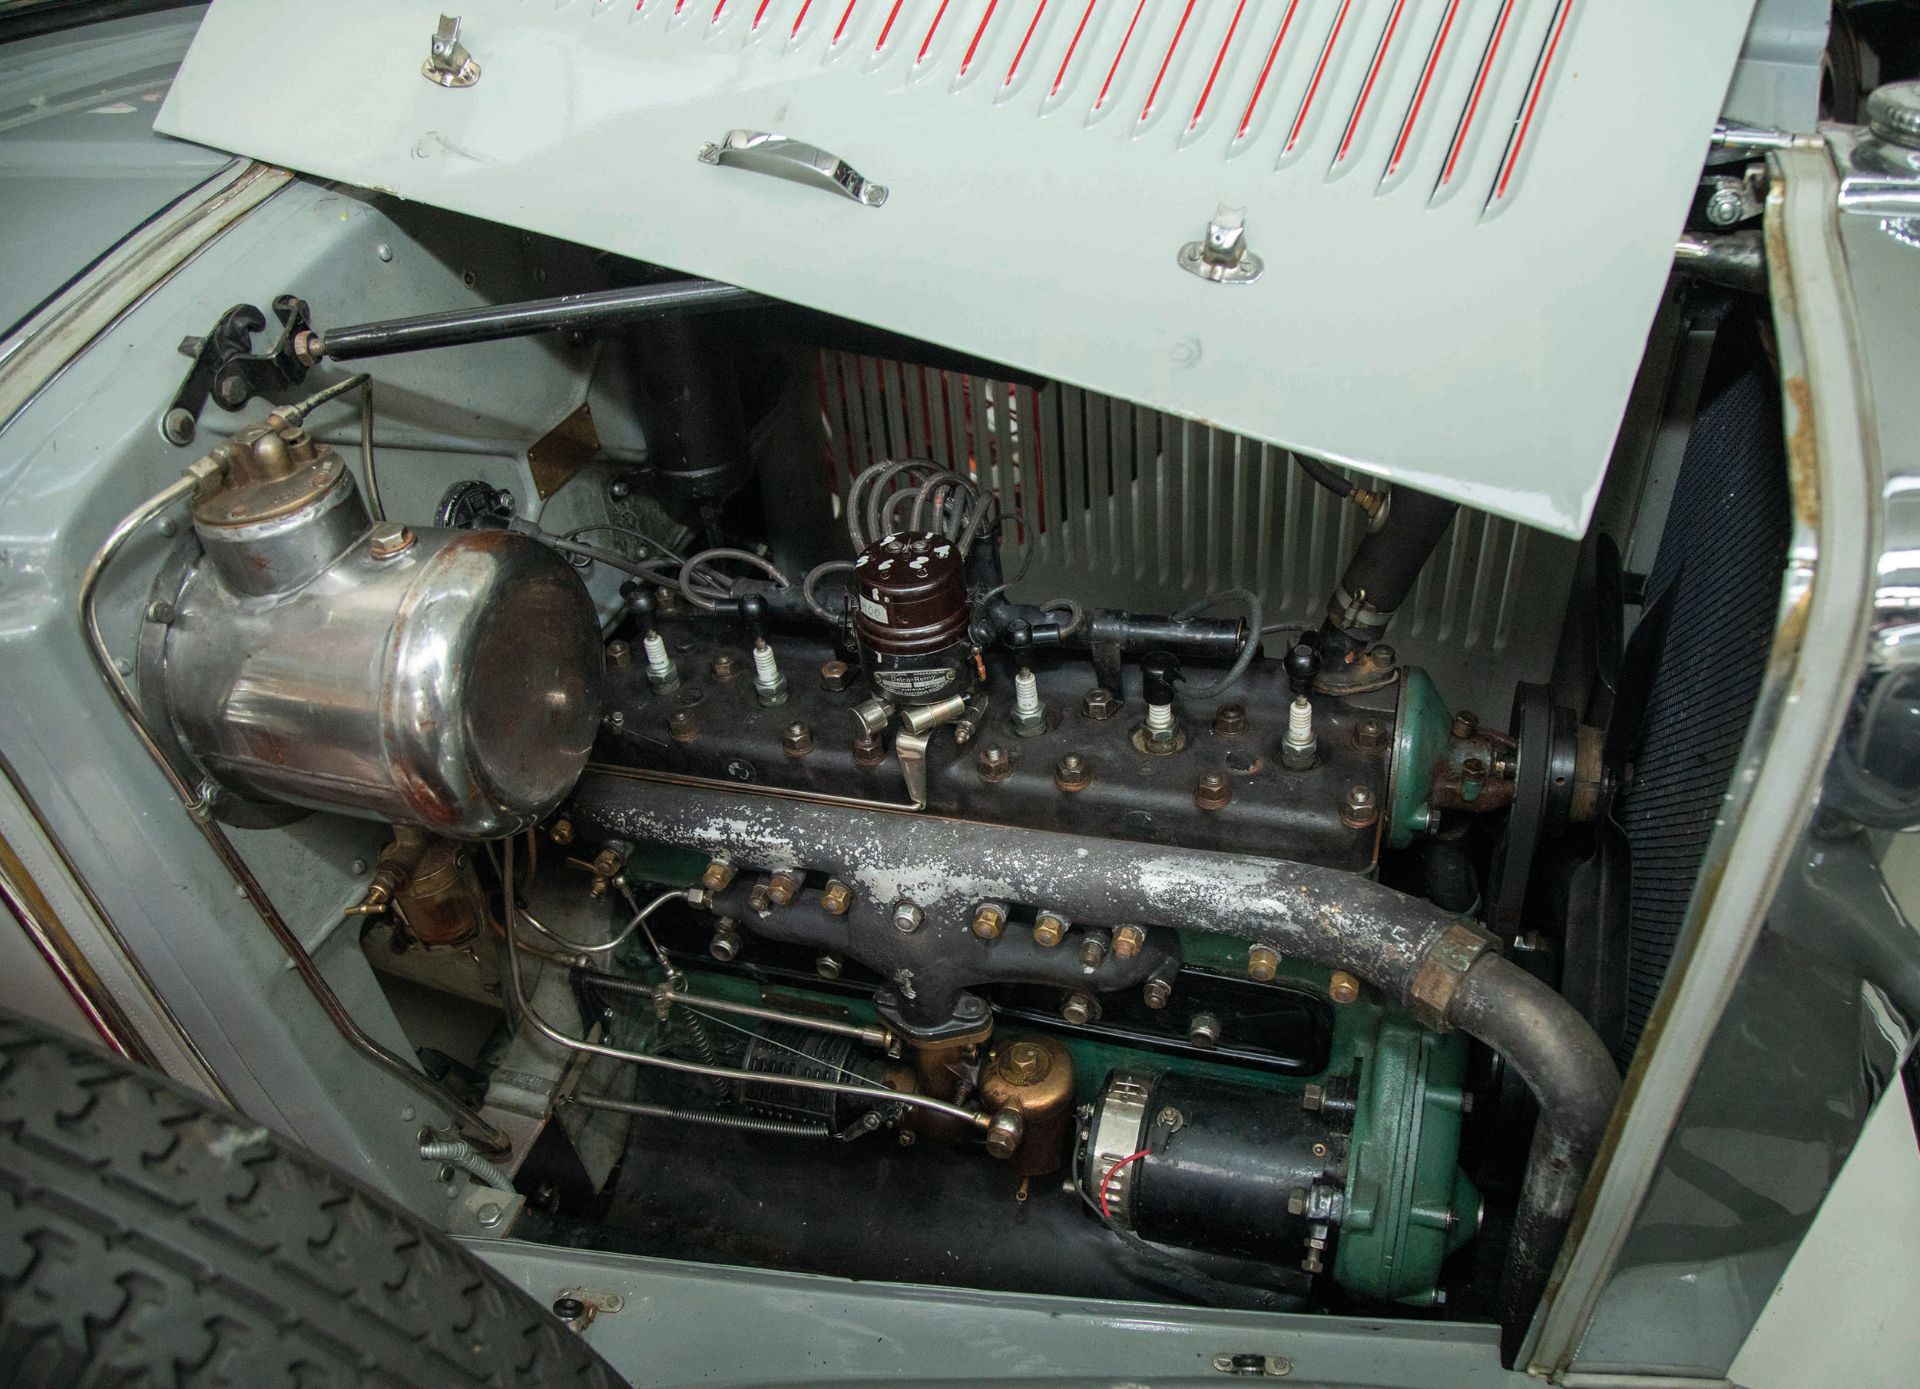 1930 FIAT 521 C SPIDER - Image 5 of 6